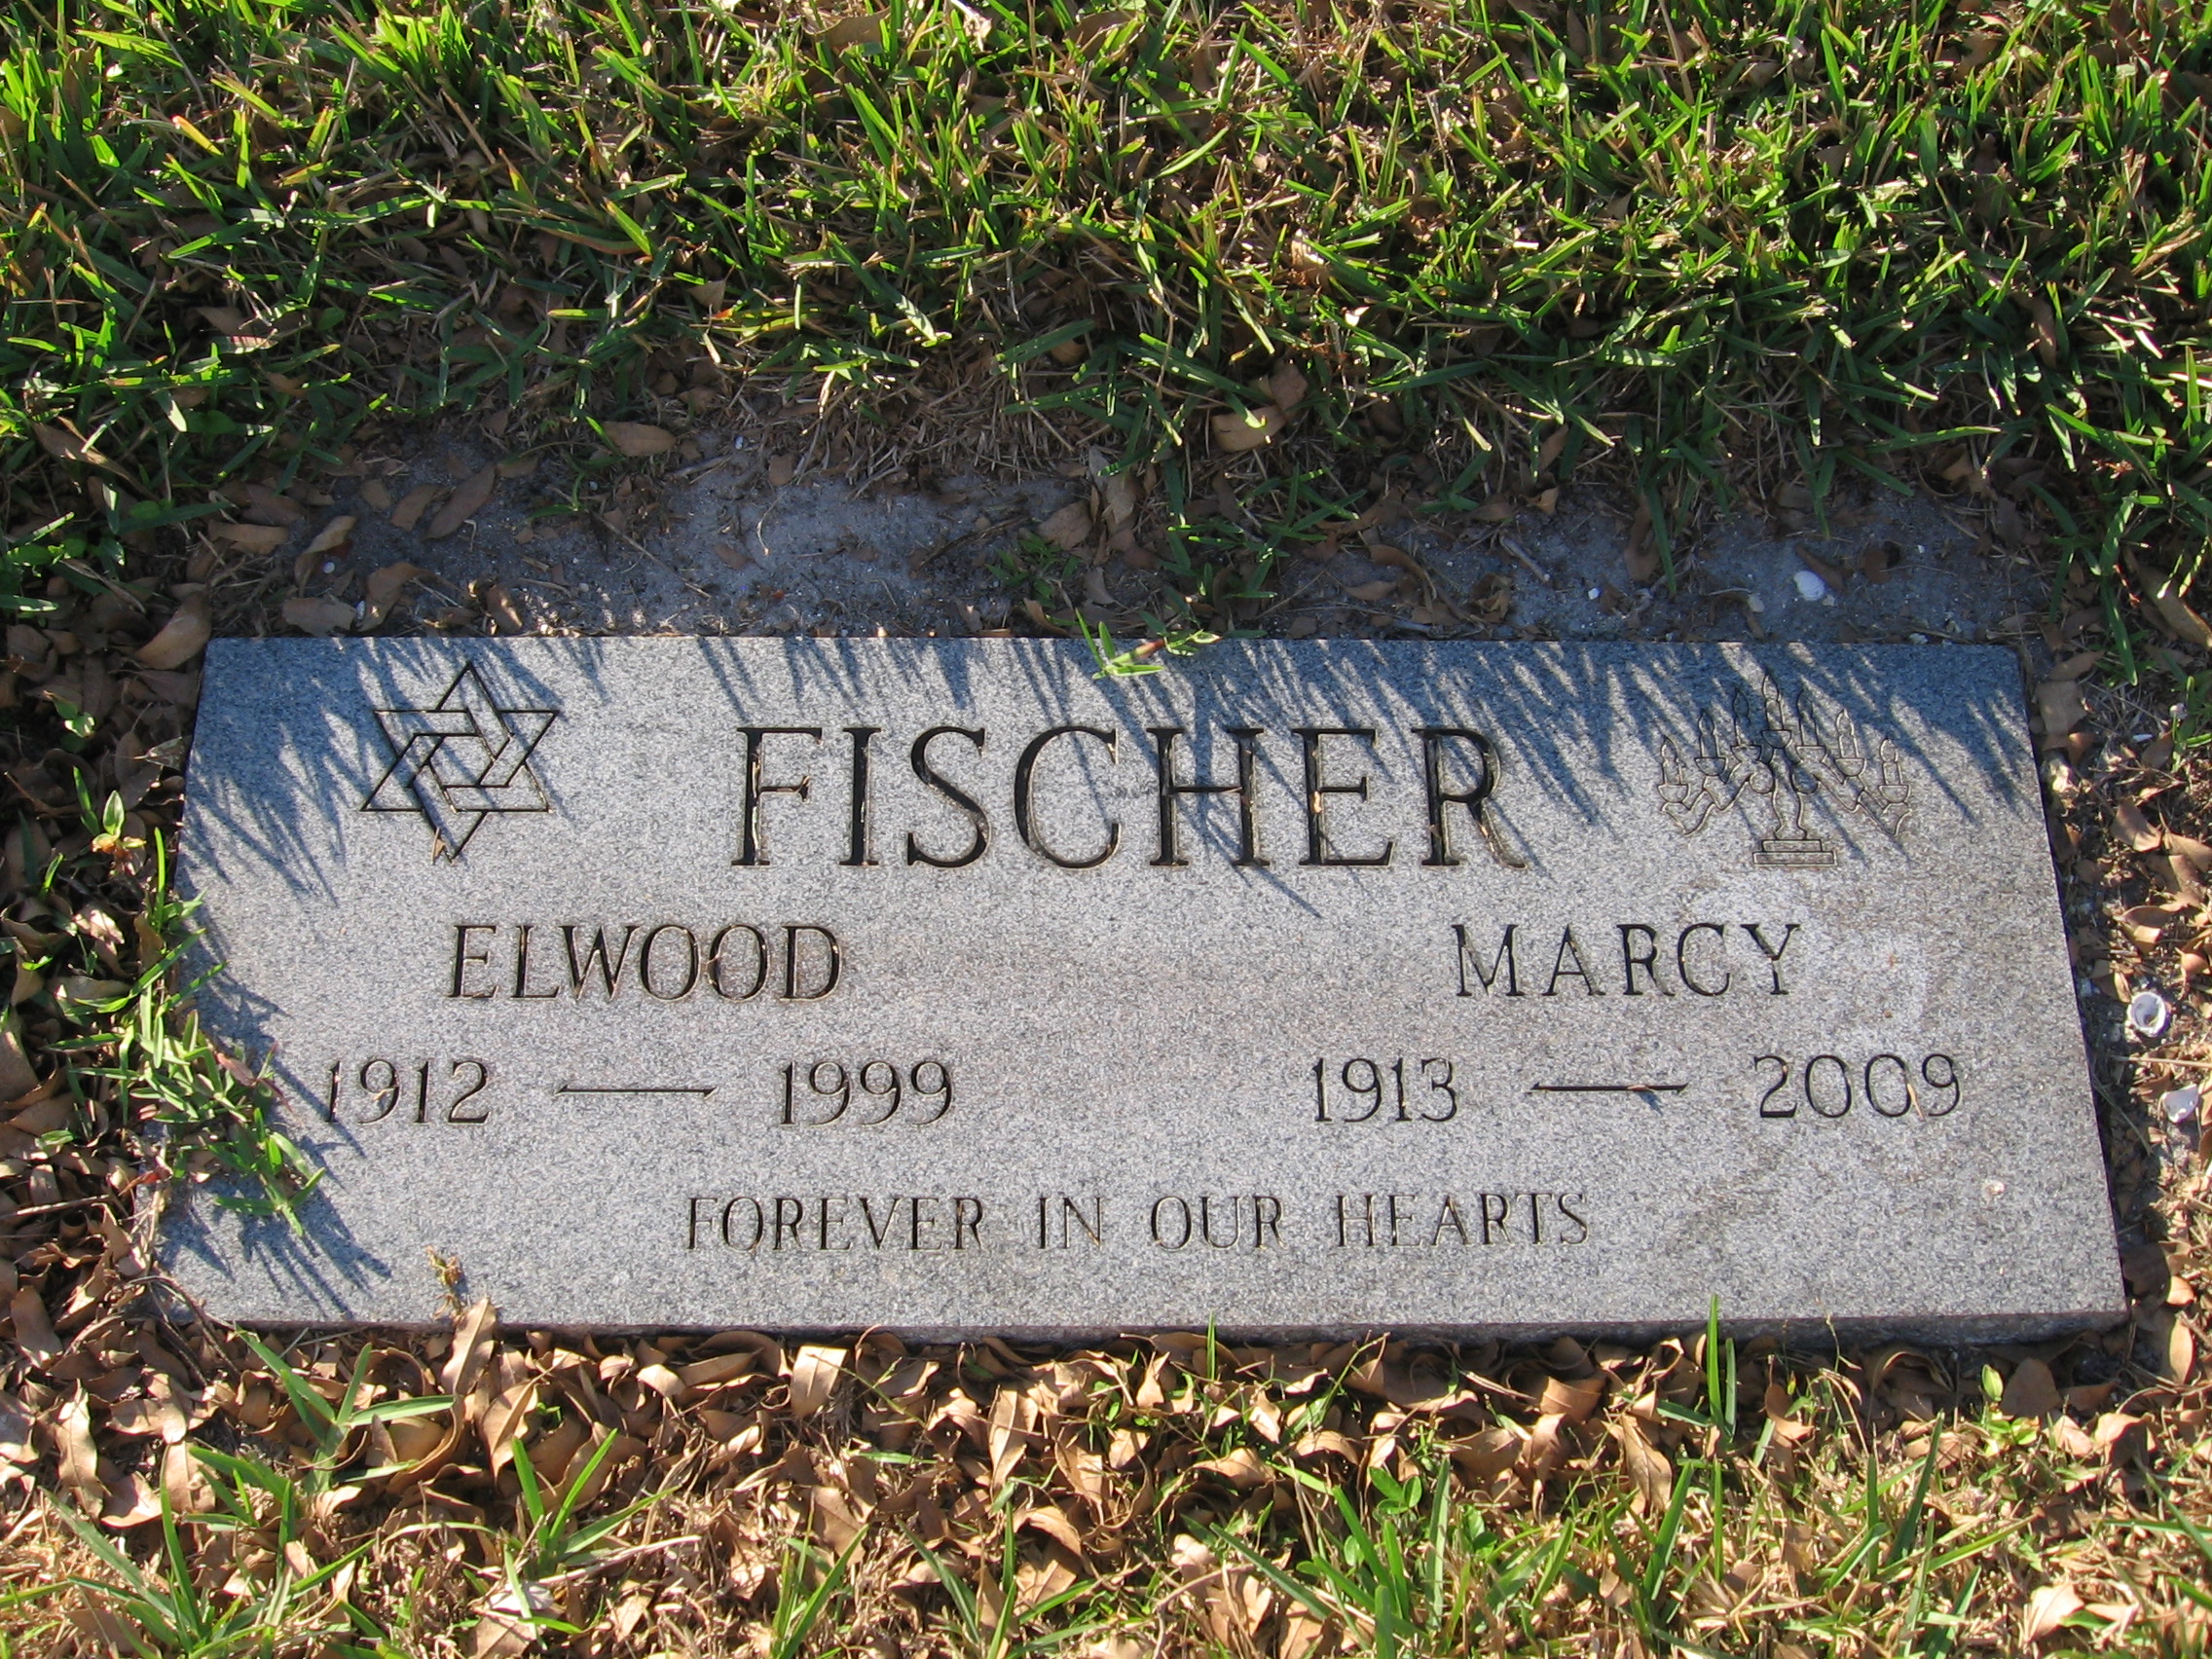 Elwood Fischer